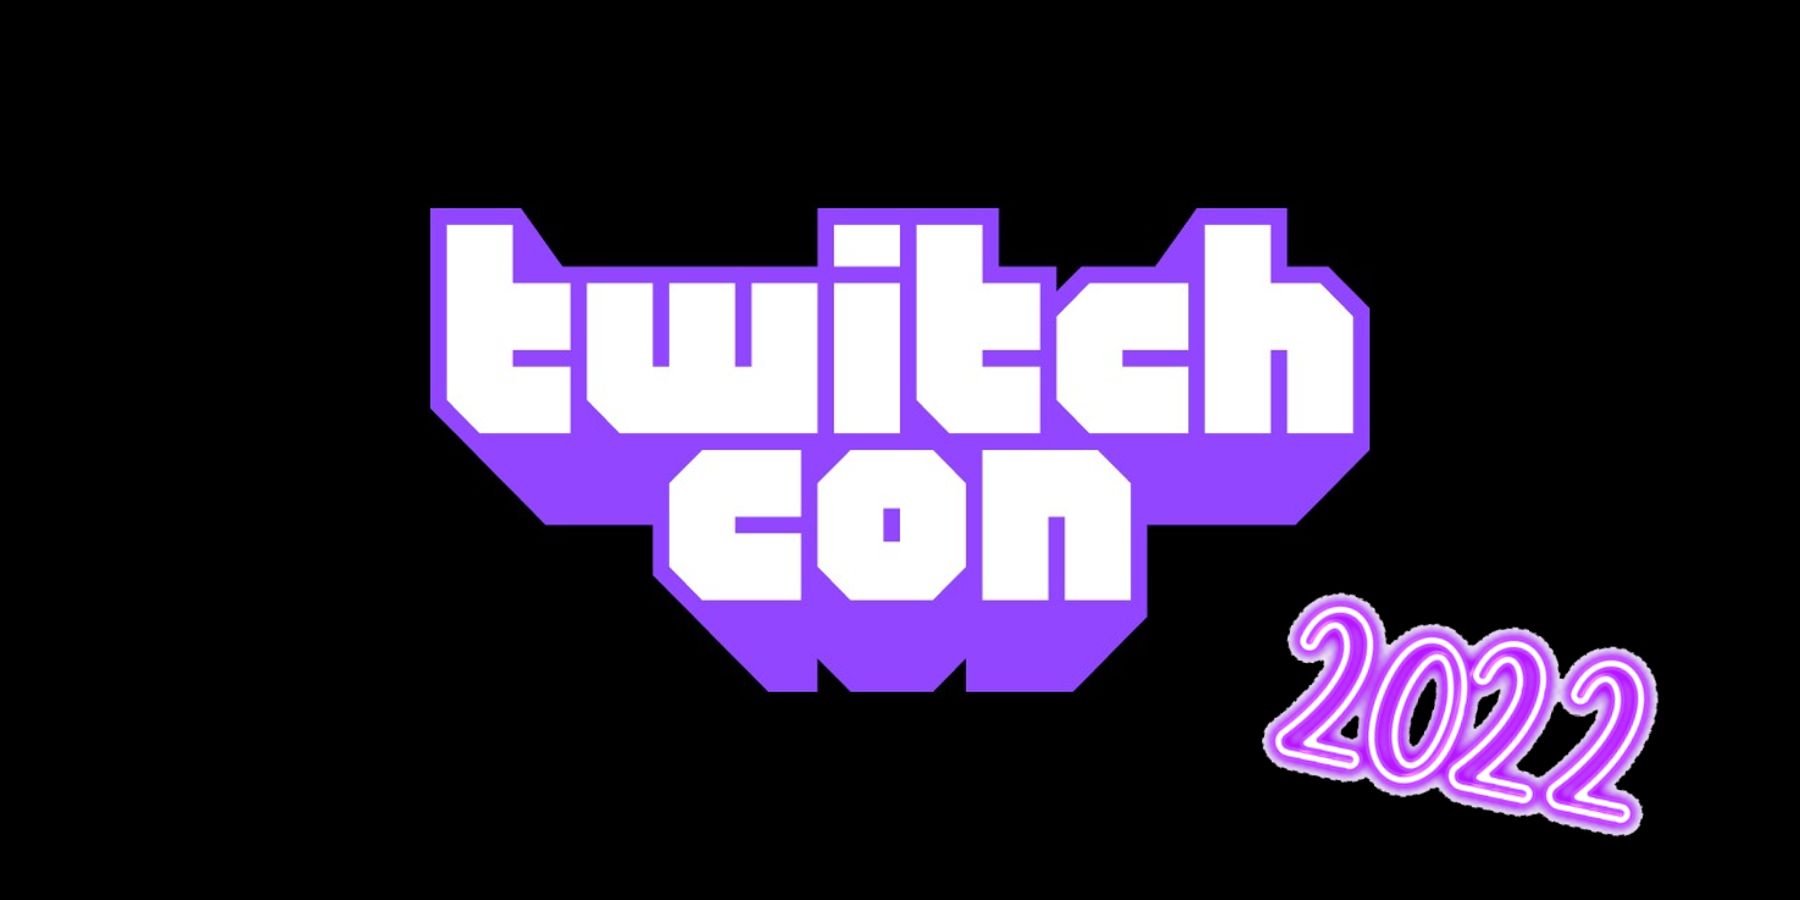 Объявление о TwitchCon 2022